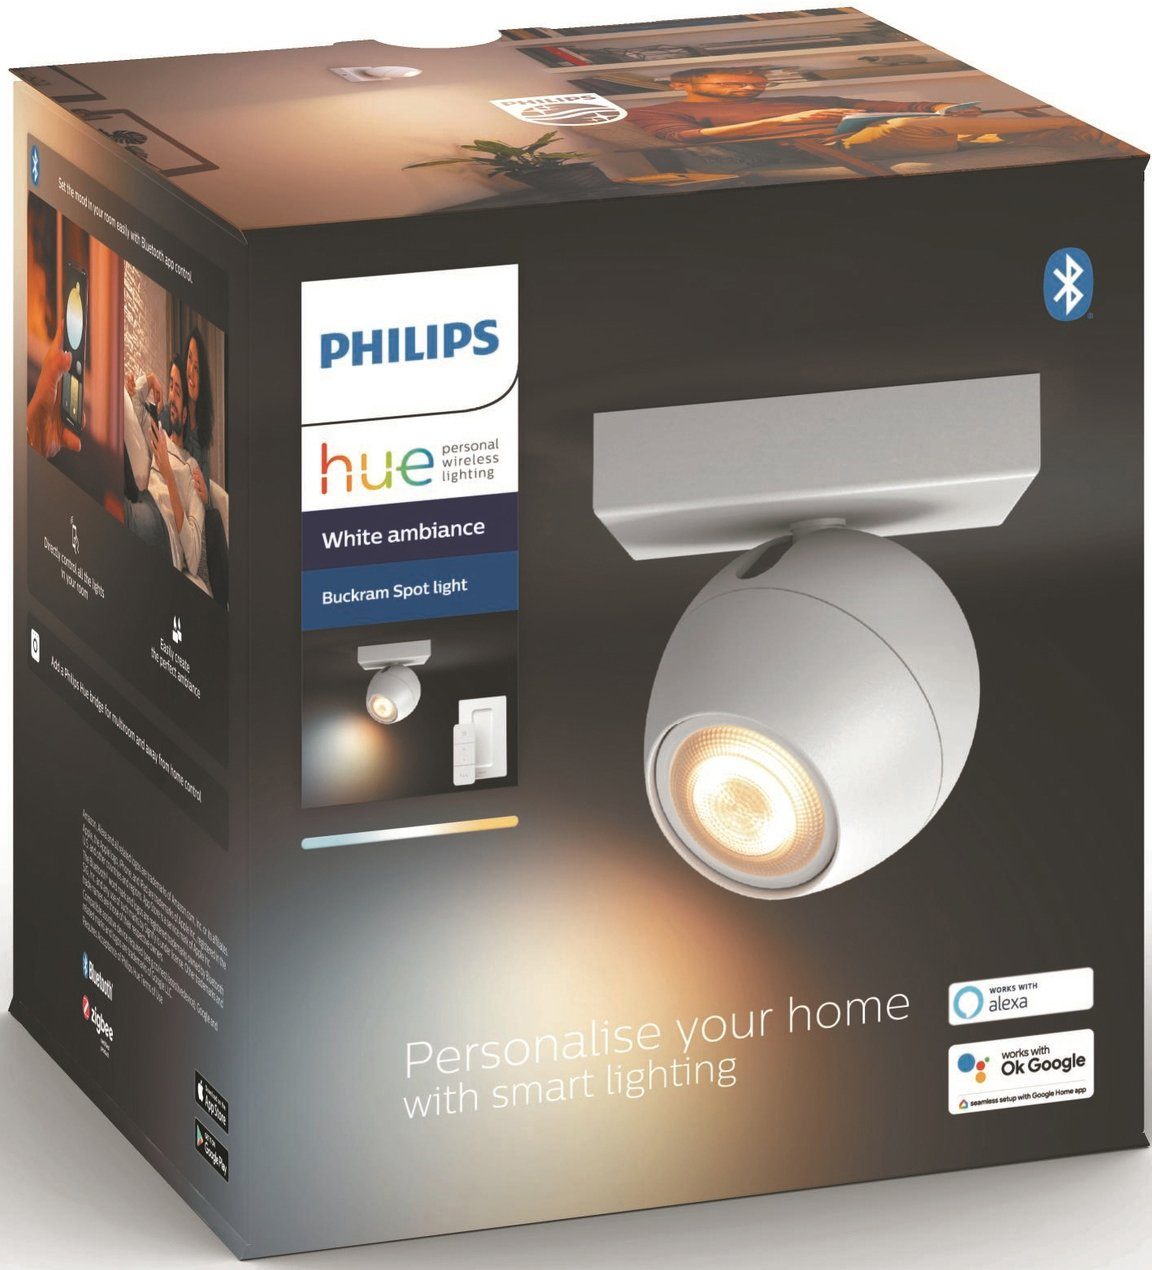 Philips wechselbar, Buckram, Flutlichtstrahler Leuchtmittel Warmweiß LED Dimmfunktion, Hue